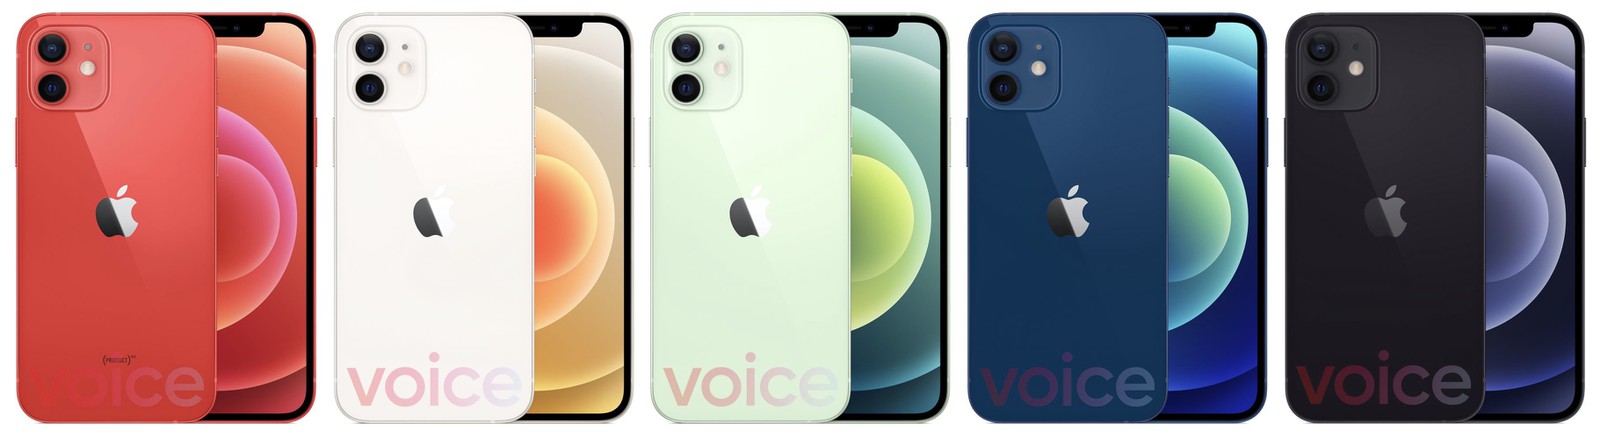 ｢iPhone 12｣シリーズの製品画像が流出